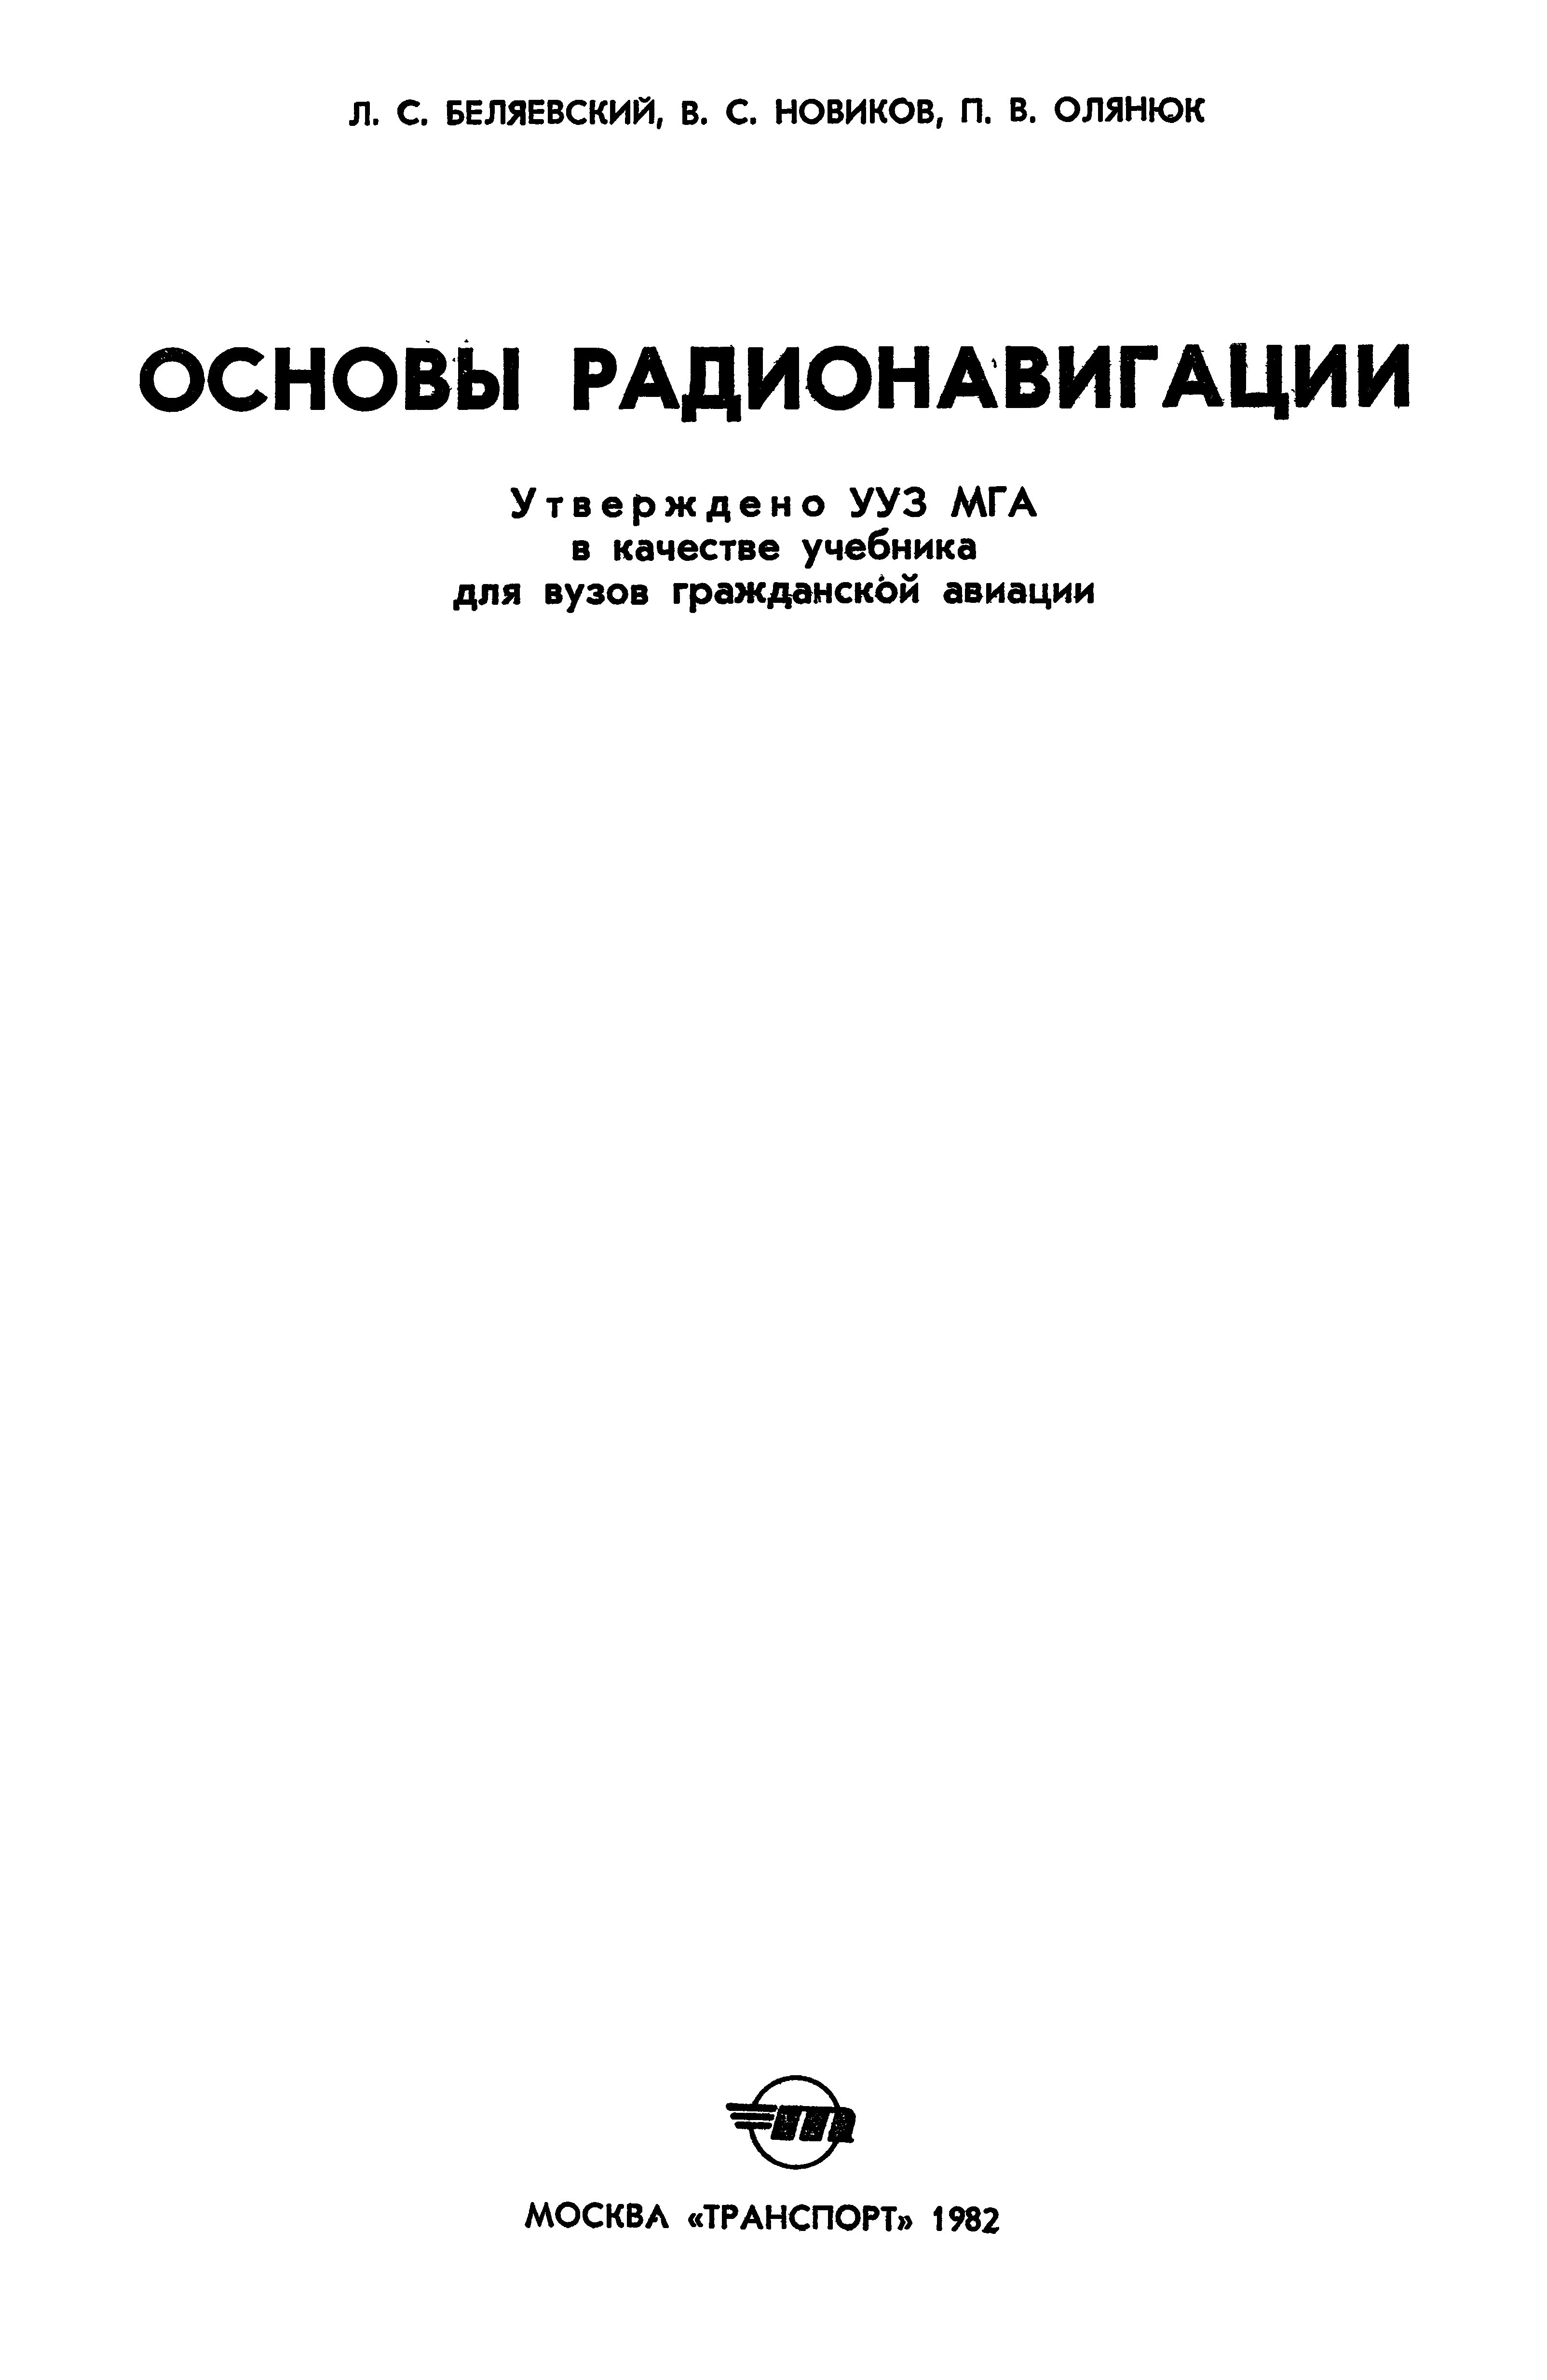 Обложка книги Основы радионавигации (Беляевский Л.С., Новиков В.С., Олянюк П.В)